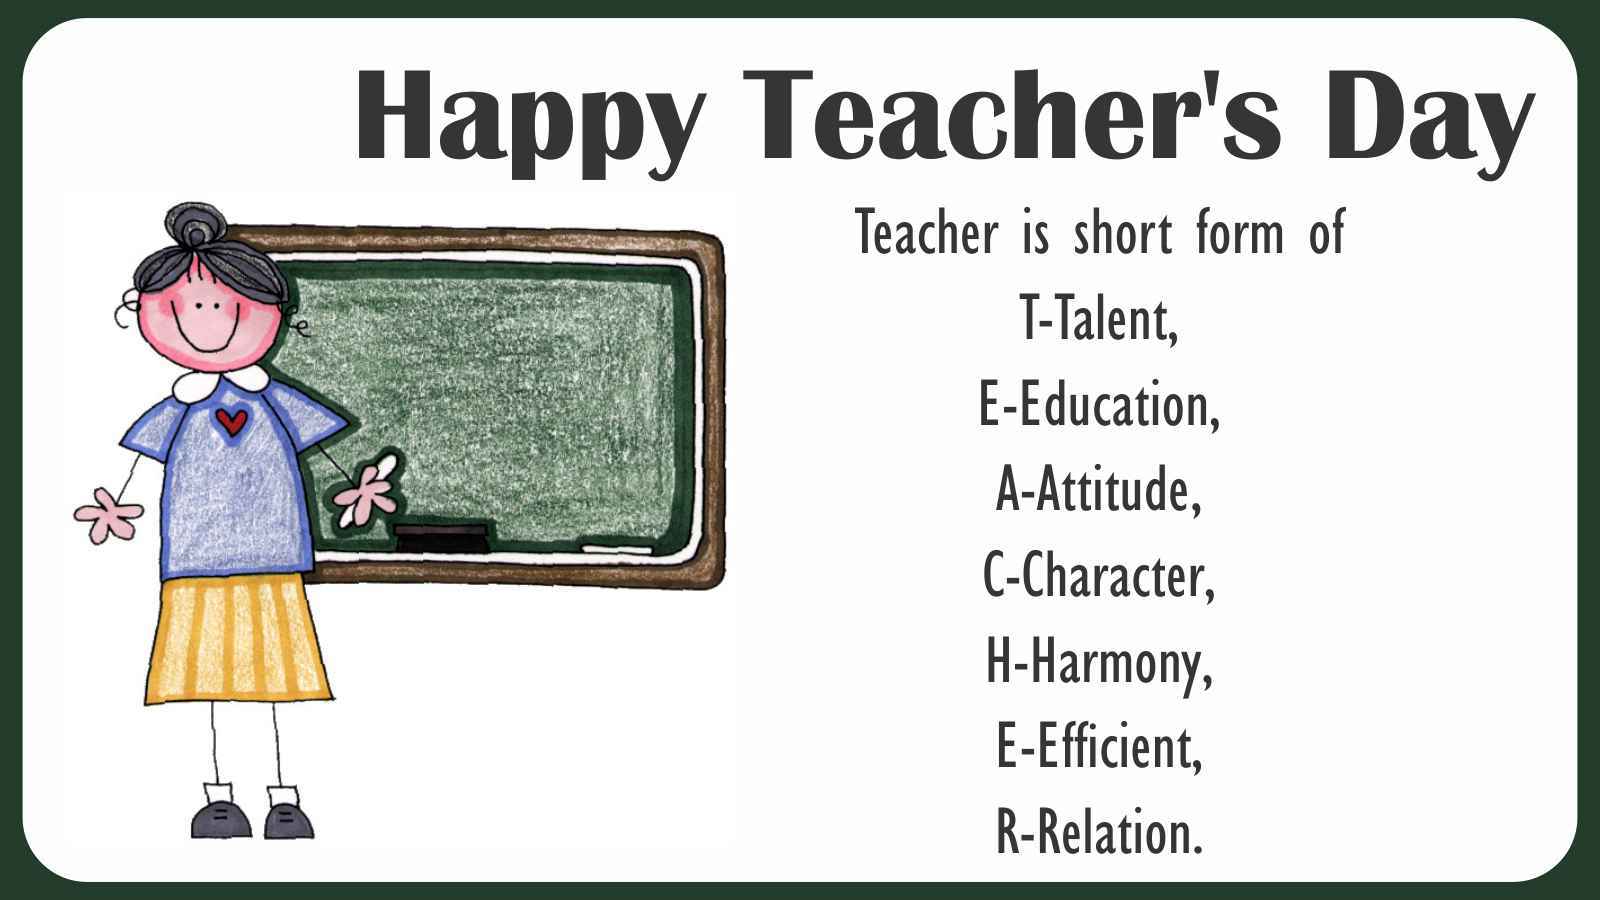 Teachers Day 2015 Teacher Meaning - Thank You Clip Art - HD Wallpaper 